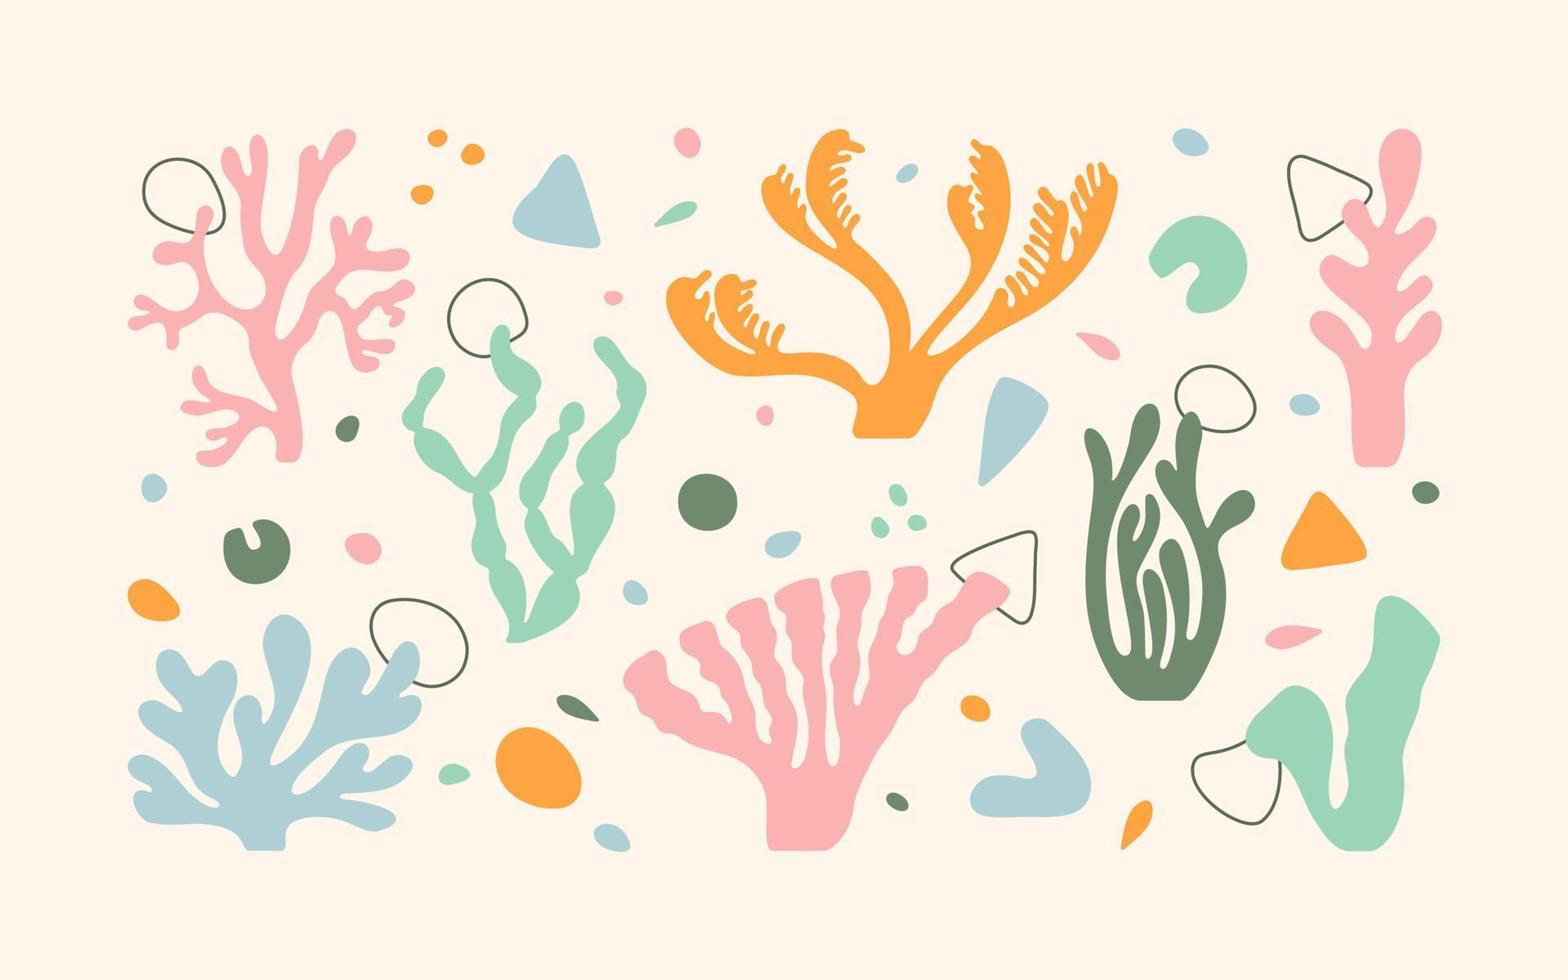 Meereskorallen zeichnen im Matisse-Stil. verschiedene abstrakte Formen. vektor